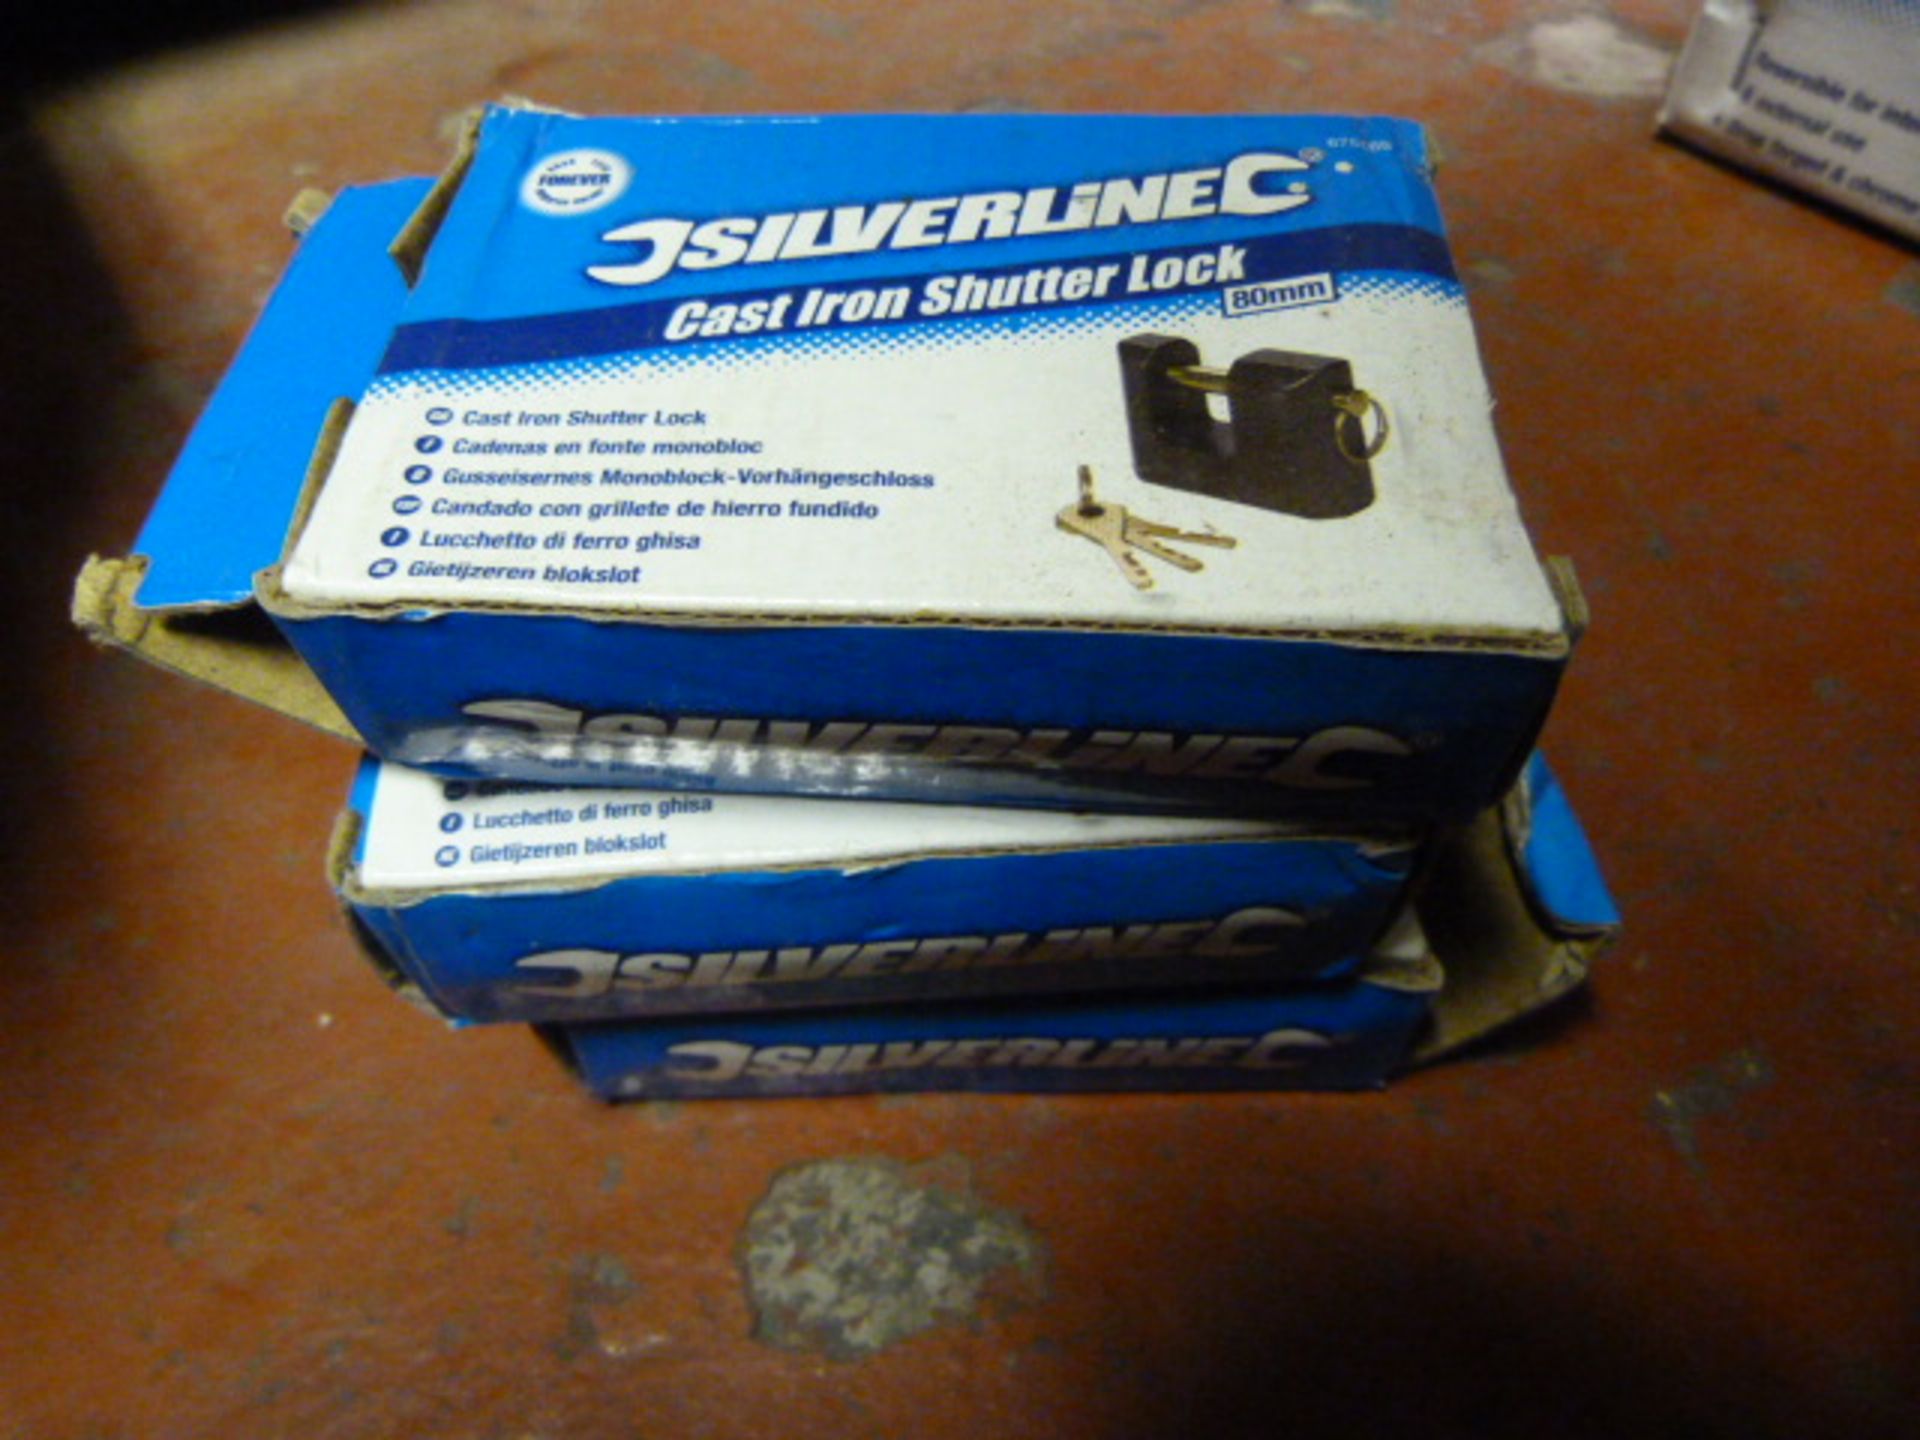 Three Silverline Cast Iron Shutter Locks